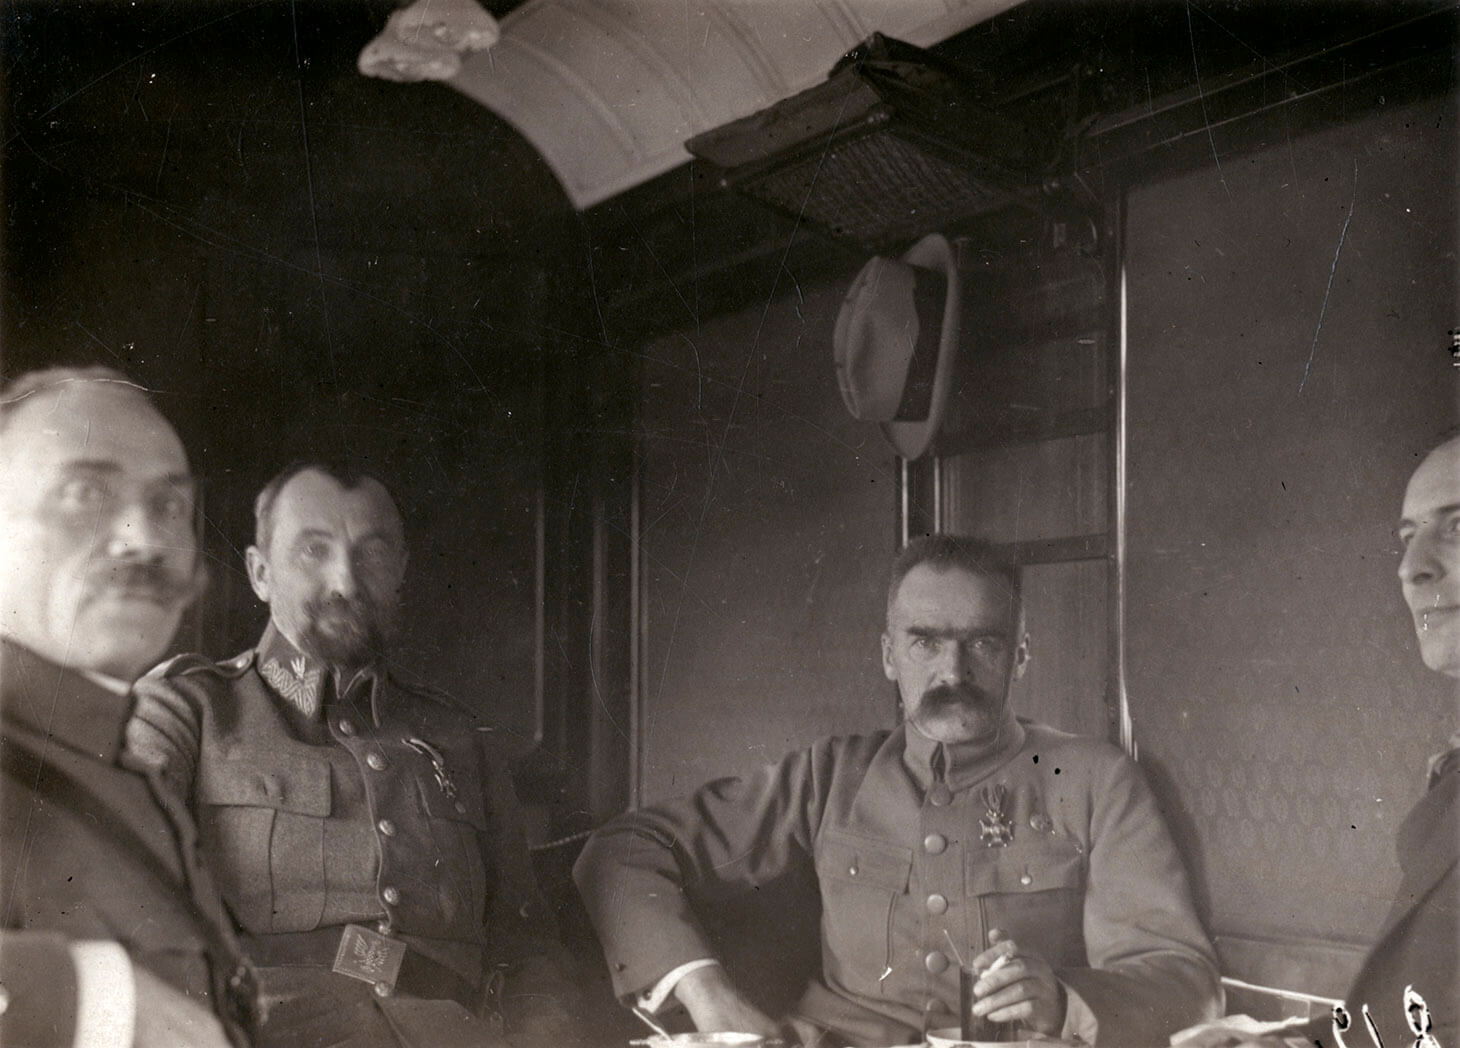 Czarno-białe zdjęcie Marszałka Piłsudskiego i Generała Tadeusza Rozwadowskiego w towarzystwie dwóch mężczyzn w wagonie pociągu. Mężczyźni pokazani są w planie półpełnym czyli do pasa. Wnętrze wagonu obite jest dekoracyjną tkaniną. Pierwszy od lewej, na mężczyzna na pierwszym planie, z zarostem pod nosem, siedzi prawym bokiem do obiektywu, w którego stronę spogląda. Drugi od lewej, w drugim planie, siedzi pokazany en face Generał Tadeusz Rozwadowski. Trzeci od lewej, pokazany jest en face Marszałek Józef Piłsudski. Wódz podpiera się prawą ręką pod bok, lewą z papierosem w dłoni, opiera o stolik. Czwarty mężczyzna, widoczny jest częściowo, lewym półprofilem. Jego postać przycięta jest prawym spadem zdjęcia. Za Marszałkiem Piłsudskim, na ścianie  wagonu znajduje się stylowy wieszak, na którym zawisa jasny kapelusz w stylu Homburg.